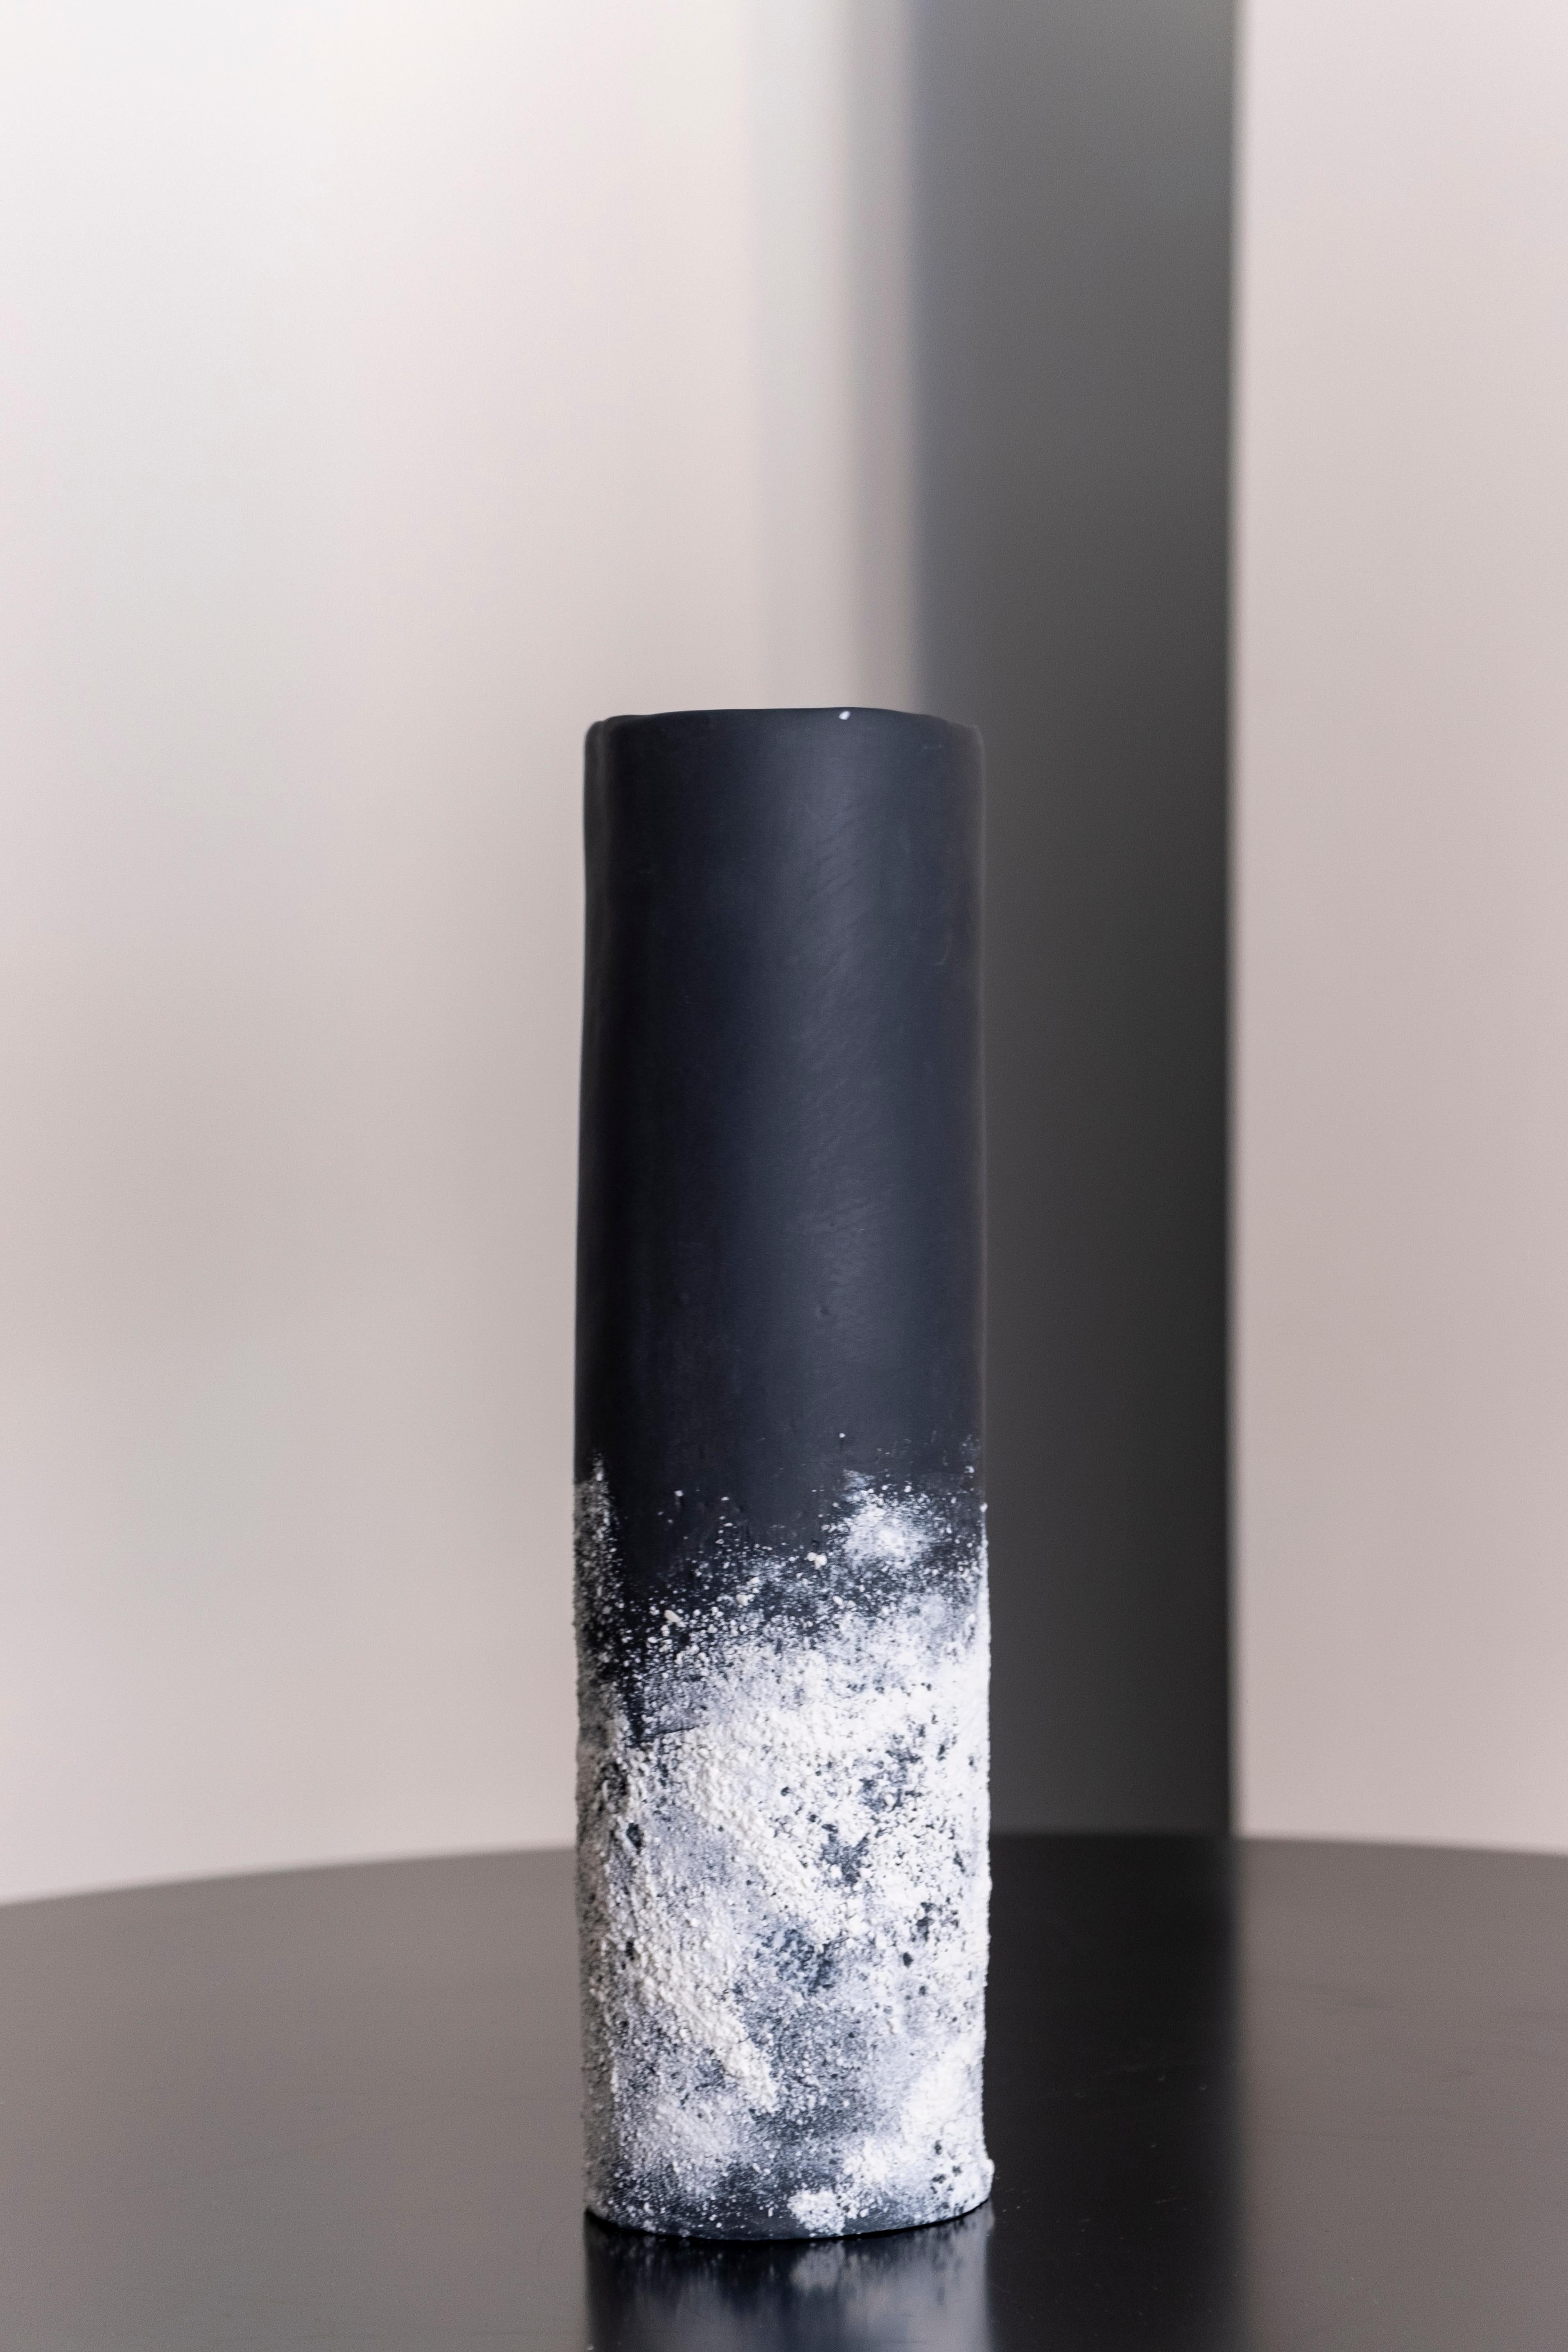 Grand vase en sable de Biancodichina
Dimensions : 9,5 x H 35 cm : 9,5 x H 35cm. 
MATERIAL : Porcelaine de Limoges, pigment, glaçure. 

Technique : Technique de construction des dalles. L'effet 